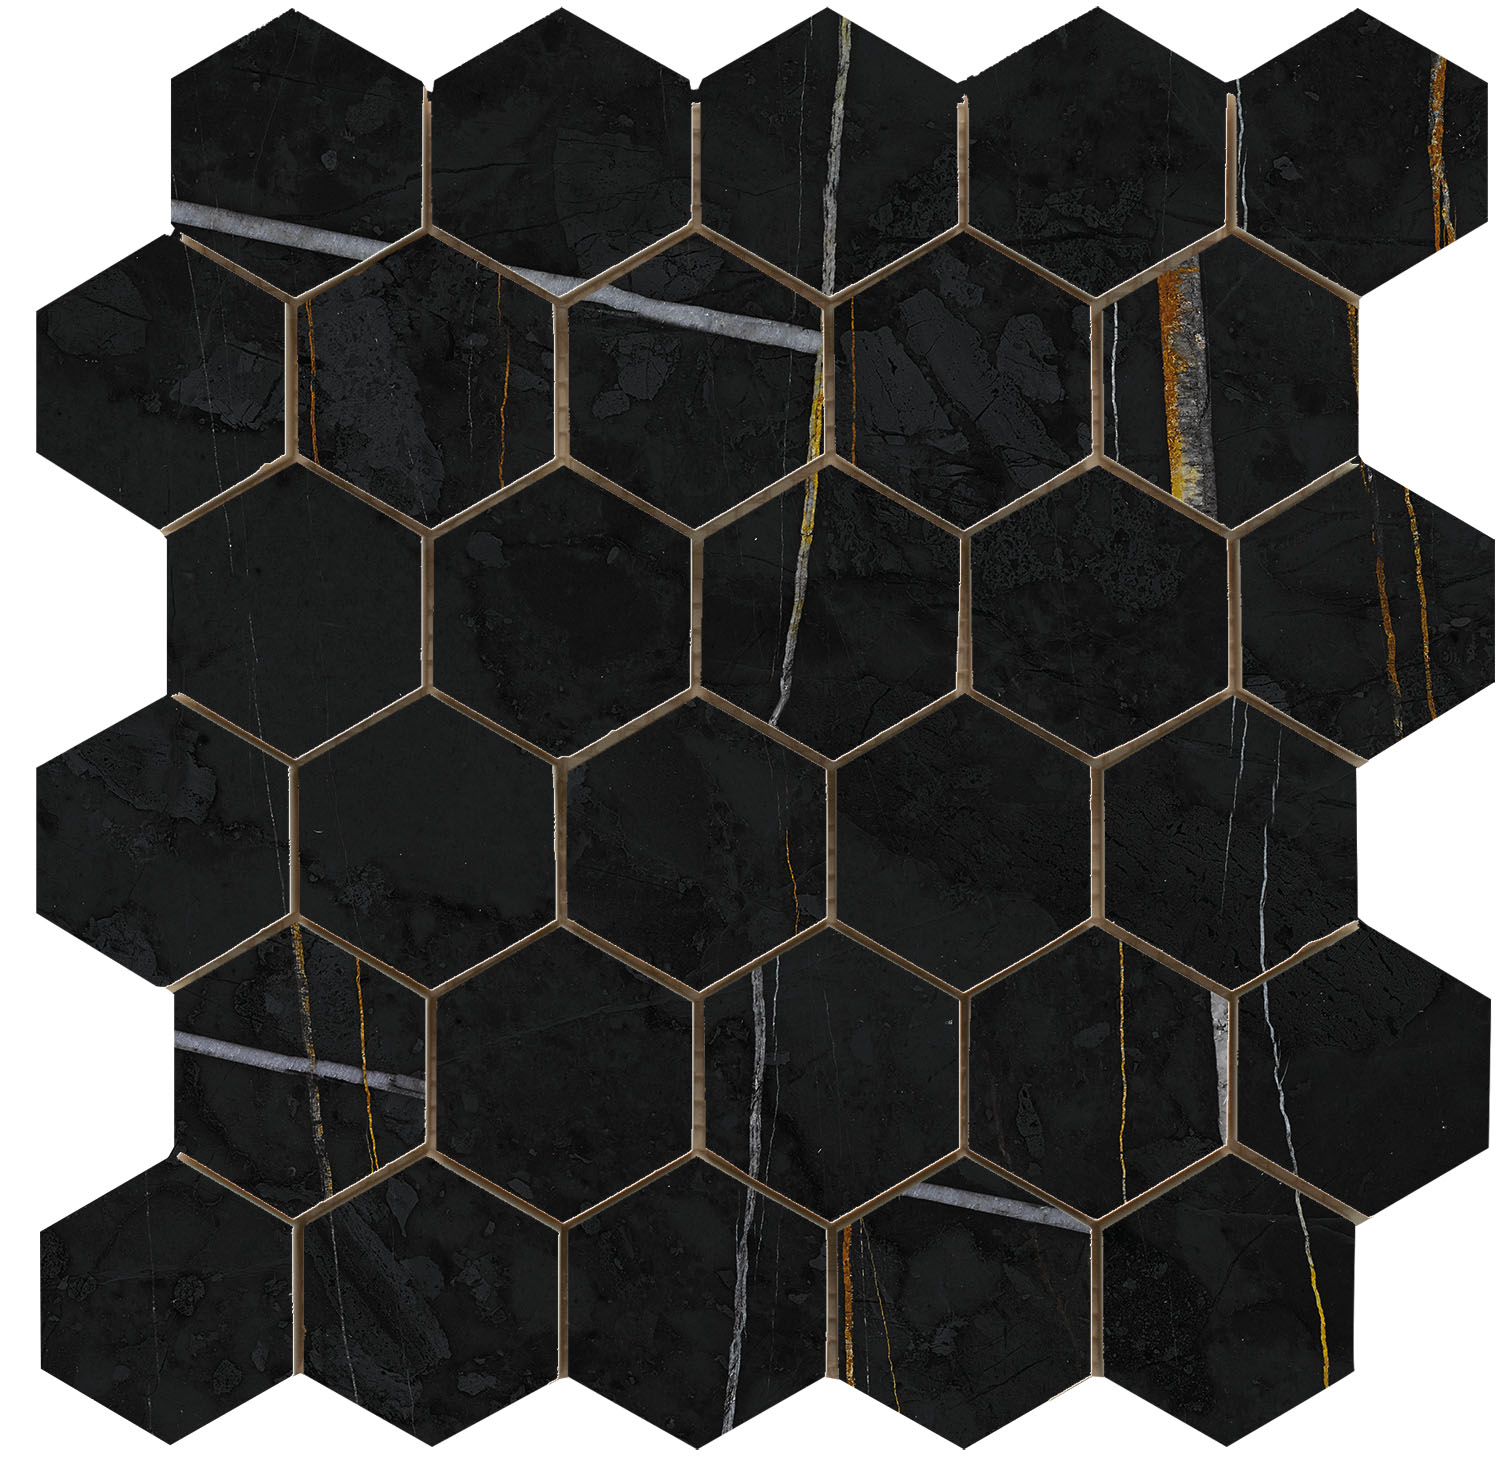 Vanezia Gres Kangos Mosaik Hexagon Marmoroptik Schwarz matt 30x30 cm rekt.